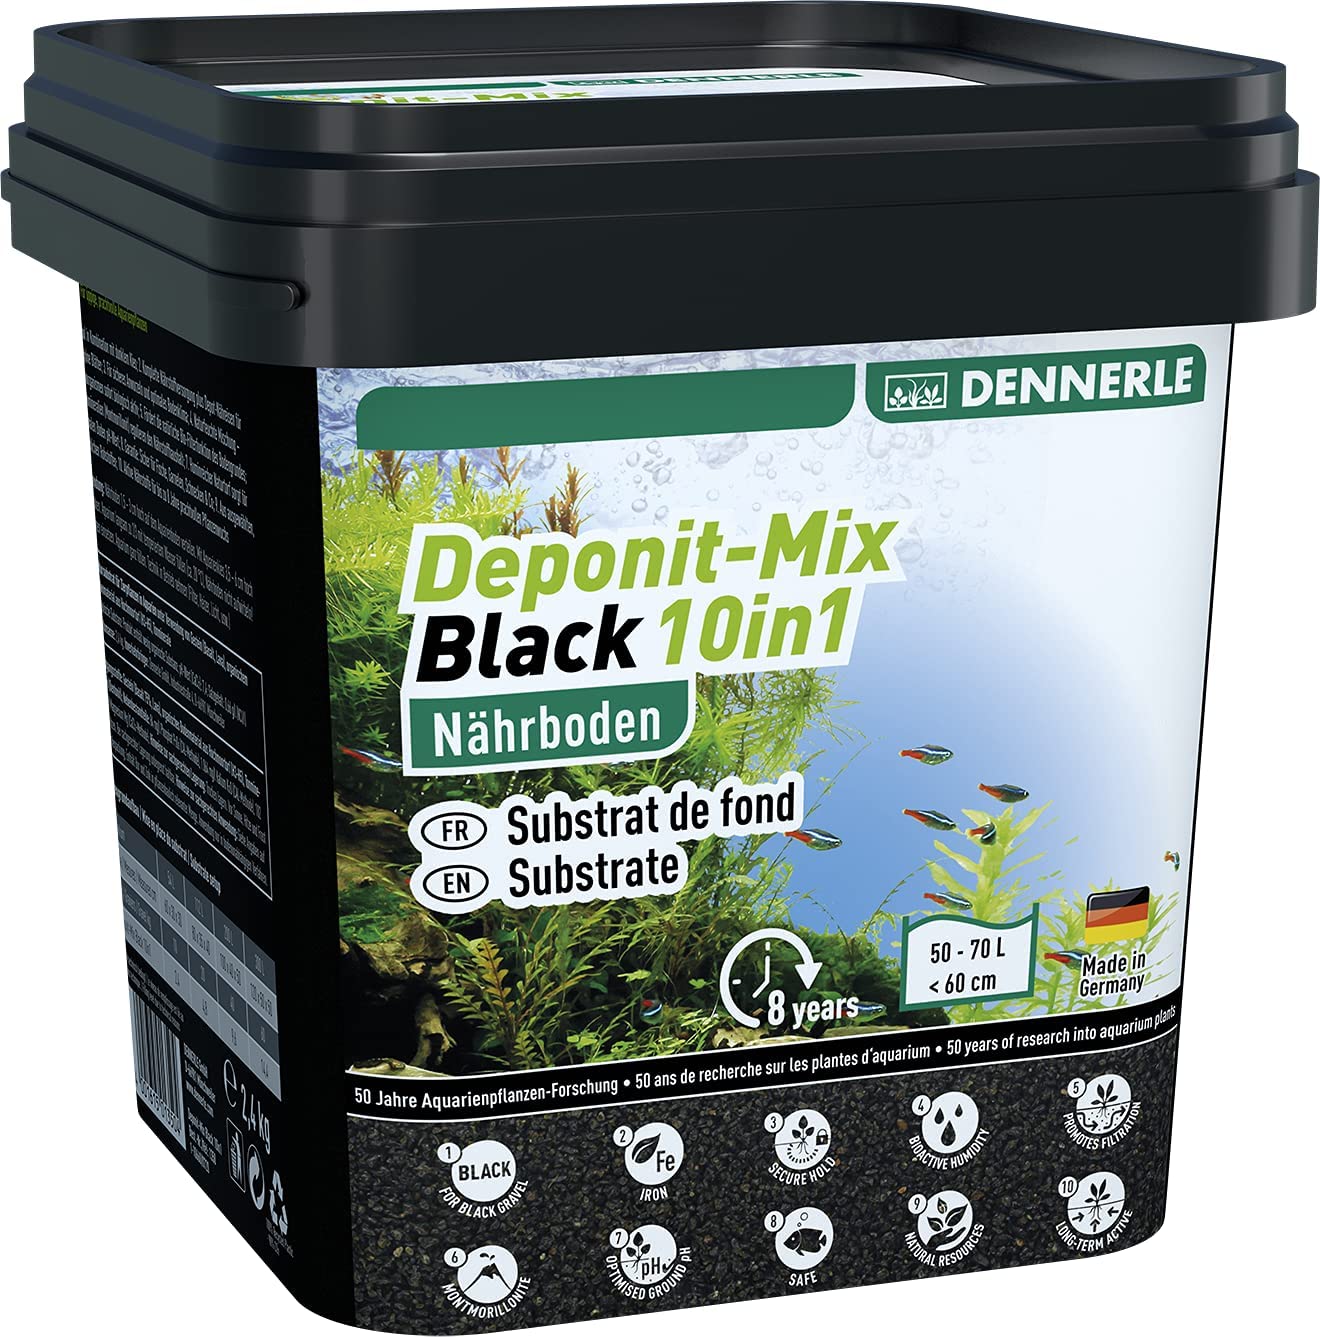 Dennerle Výživový substrát Deponit-Mix Black 10in1, 4,8kg